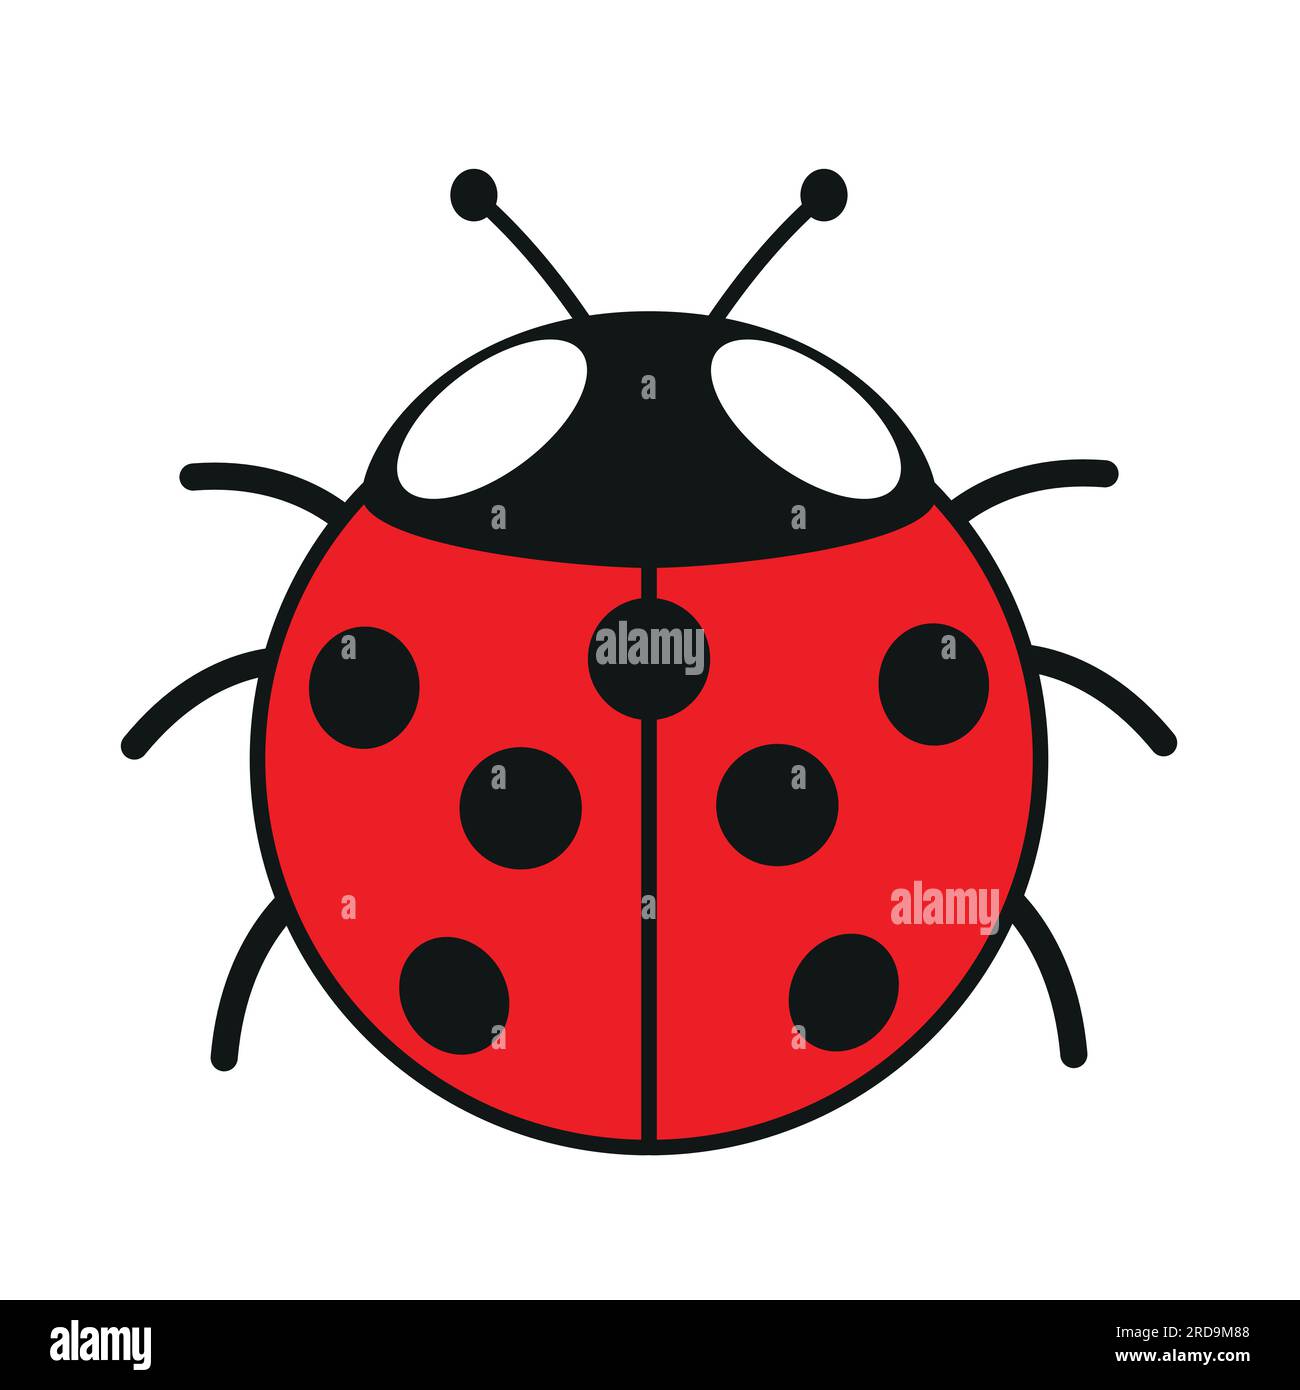 sette ladybird, illustrazione a colori di un cartone animato vettoriale con sette ladybug maculati, isolati su bianco Illustrazione Vettoriale